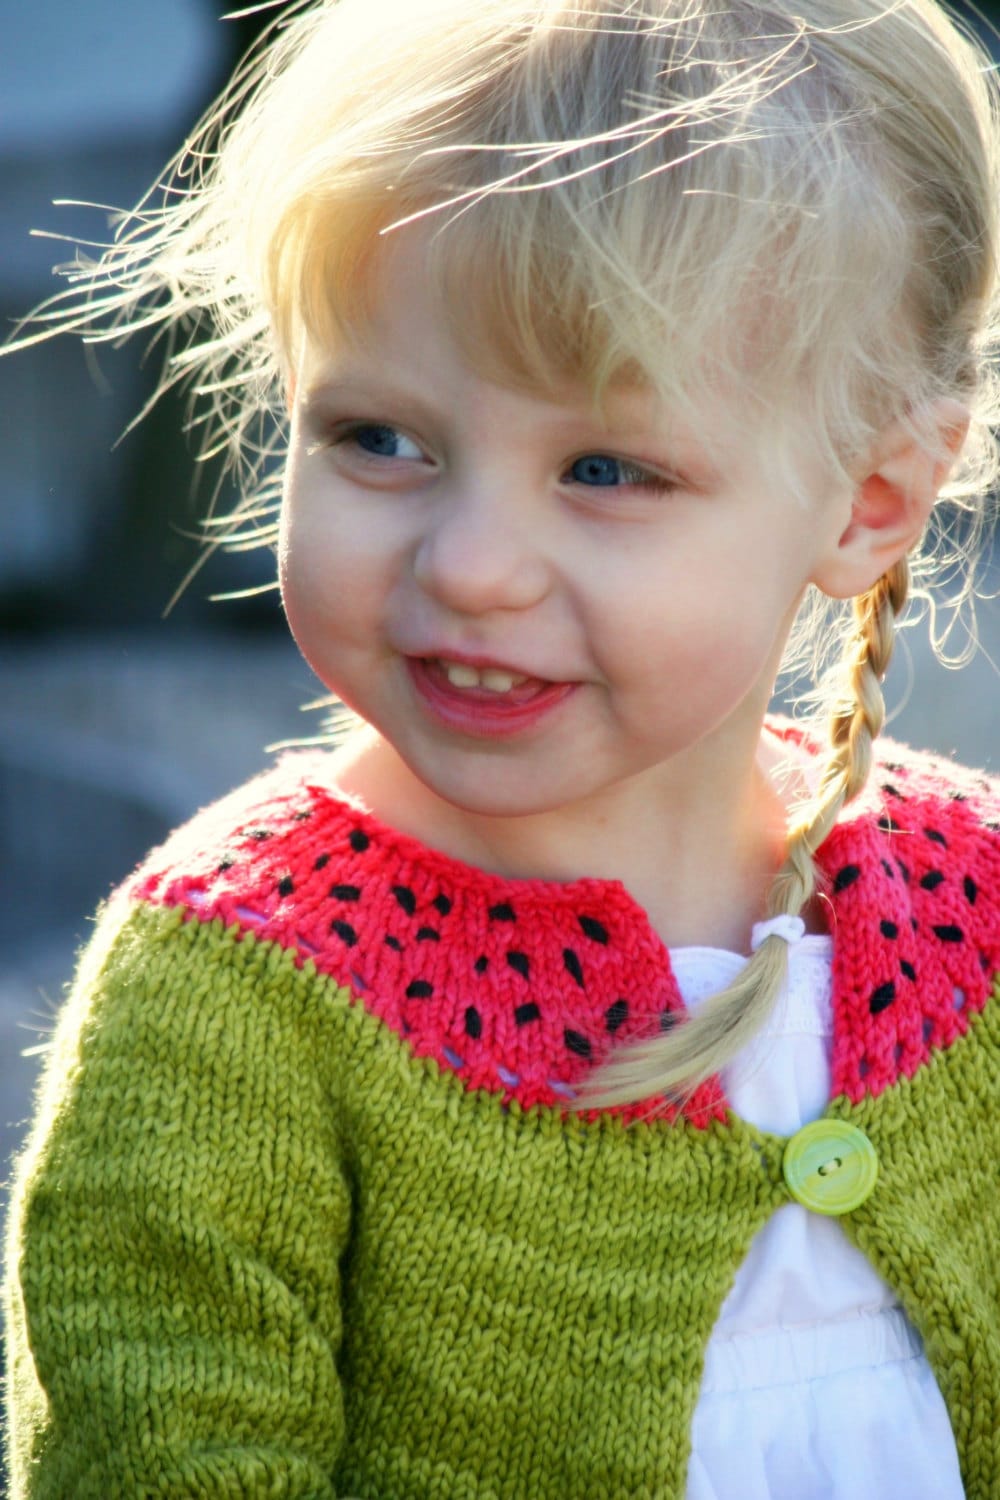 Cute Child's Sweater Knitting Pattern • Watermelon Knitting Pattern PDF • Intermediate Knit Pattern